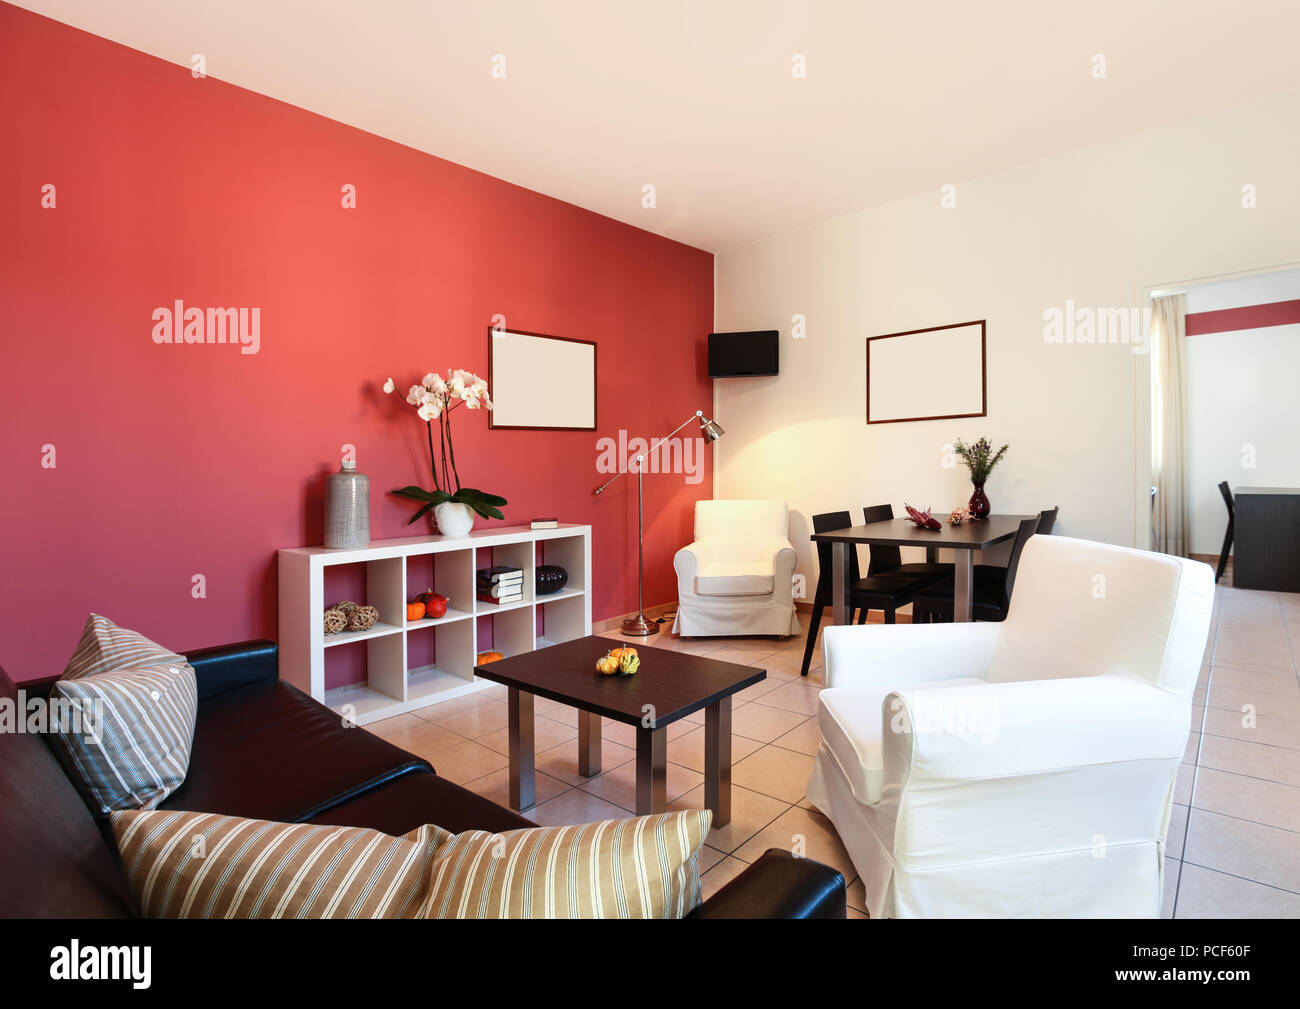 Interno dell appartamento, soggiorno con parete rossa Foto stock - Alamy